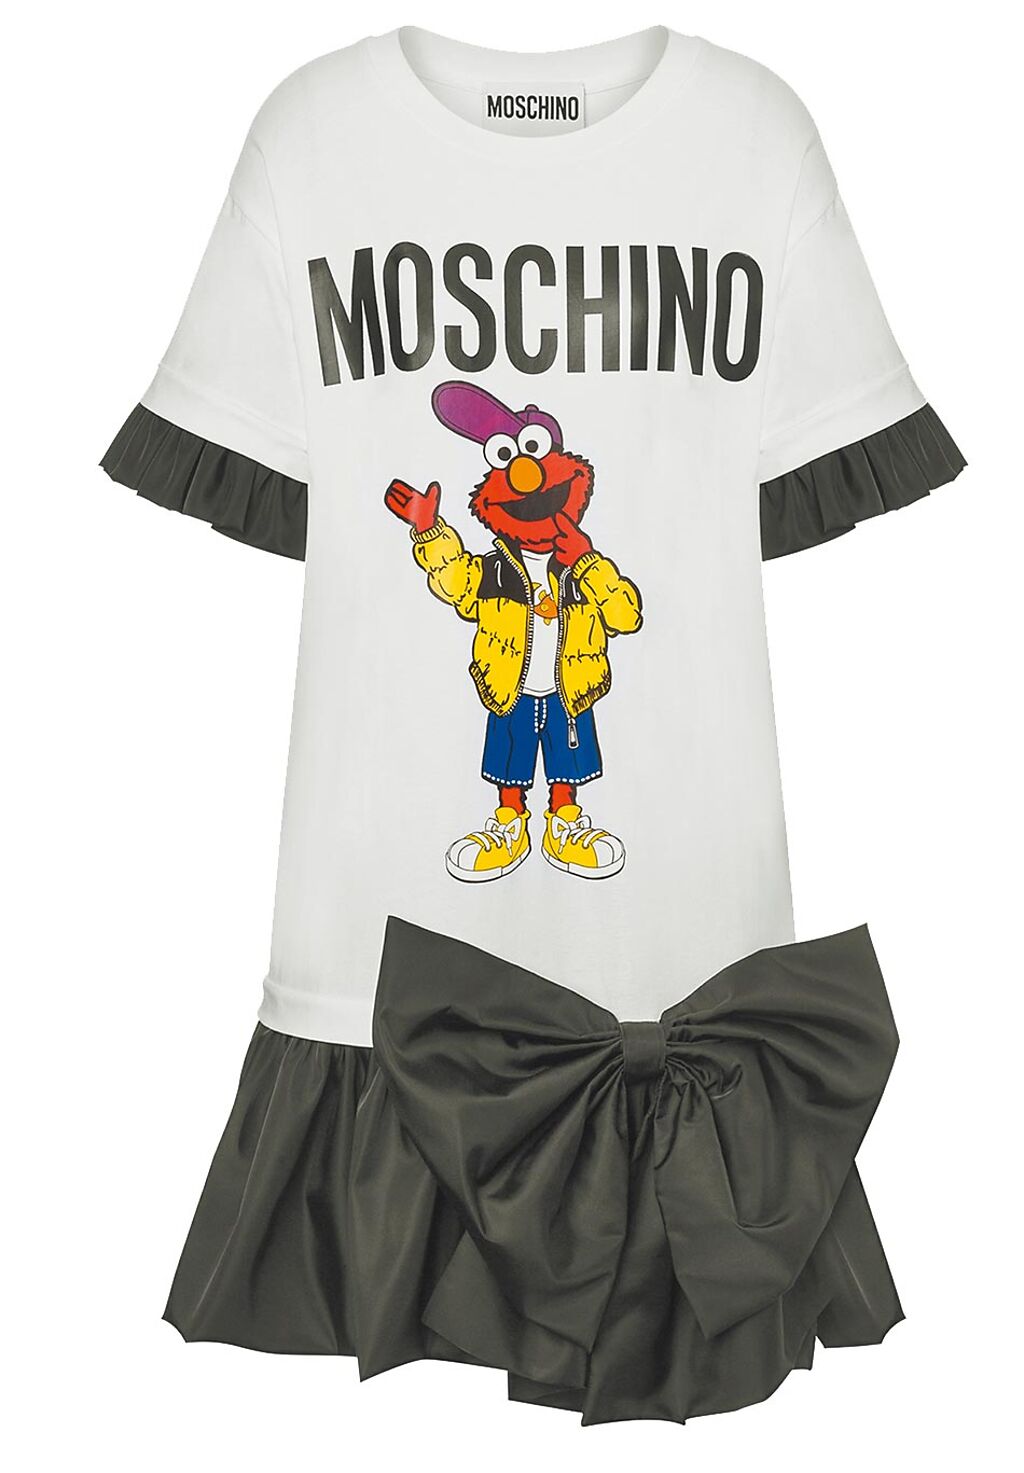 Moschino結合上衣和裙裝設計，又有可愛的芝麻街角色加持，有什麼理由不入手？3萬6500元。（Moschino提供）